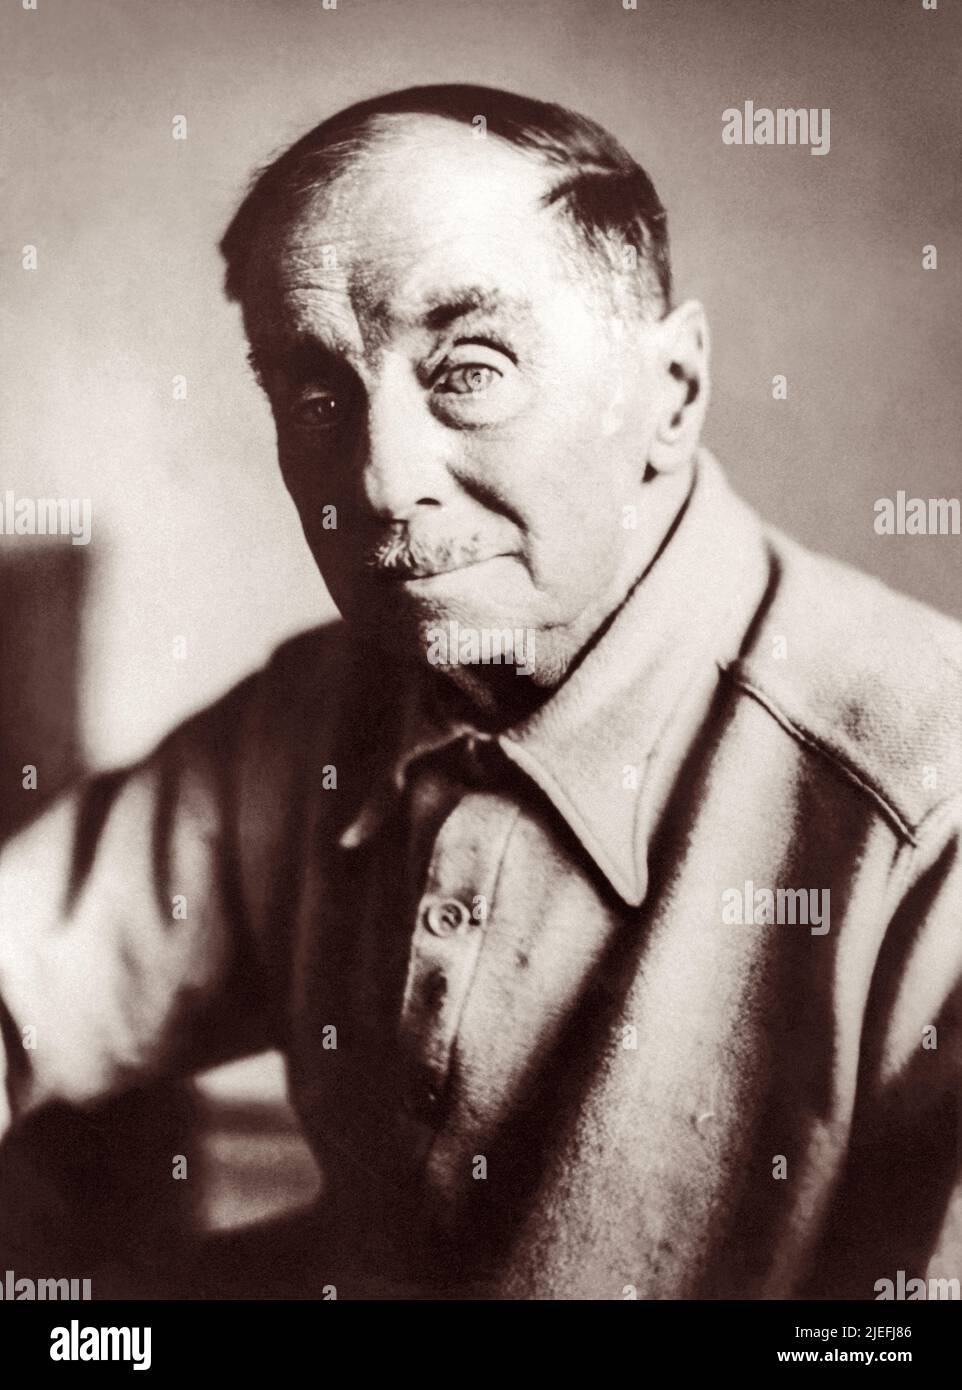 H.G. Wells (1866-1946), autore britannico di classici di fantascienza la guerra dei mondi, l'uomo invisibile, la macchina del tempo, e l'isola del Dott. Moreau. (Foto: 1944) Foto Stock